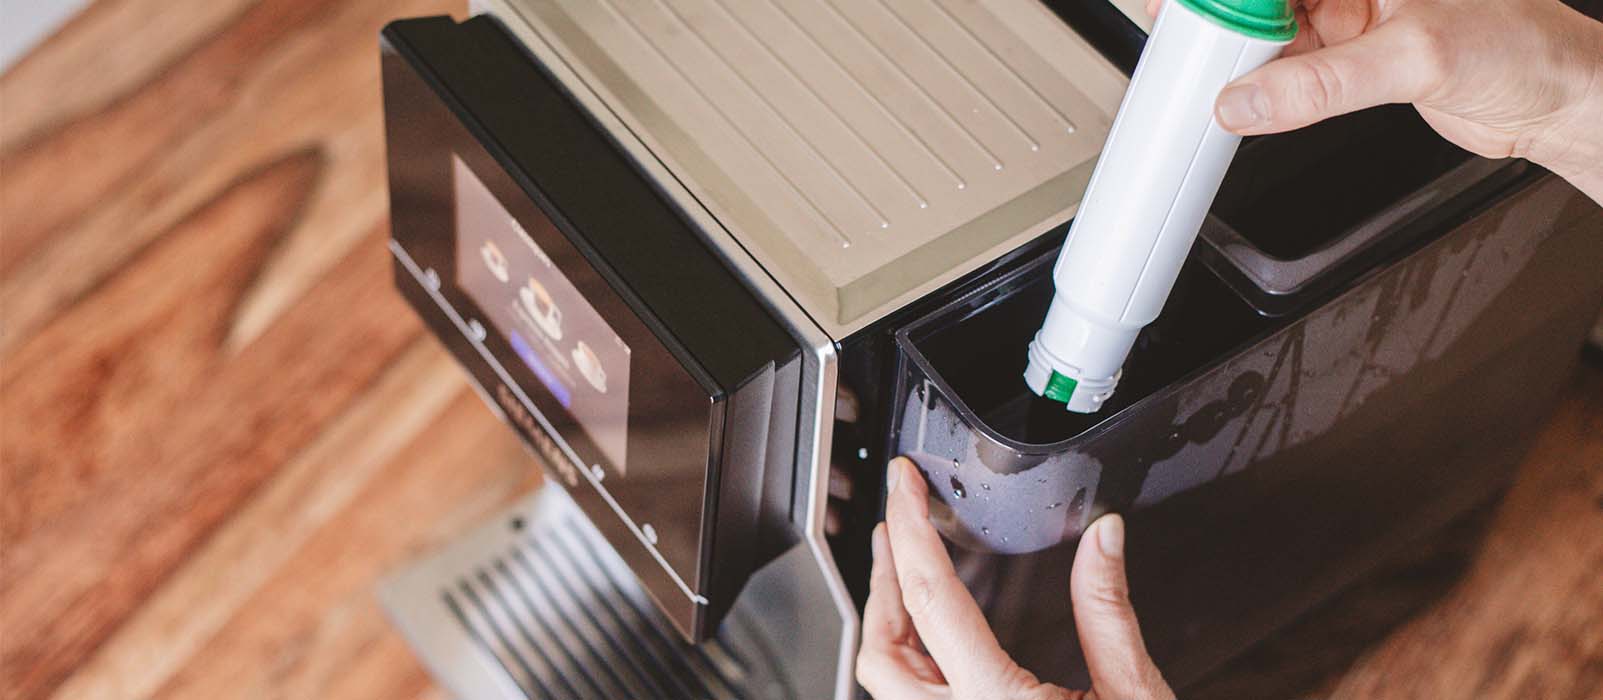 Comment nettoyer sa machine à café à grain ? Tous nos conseils